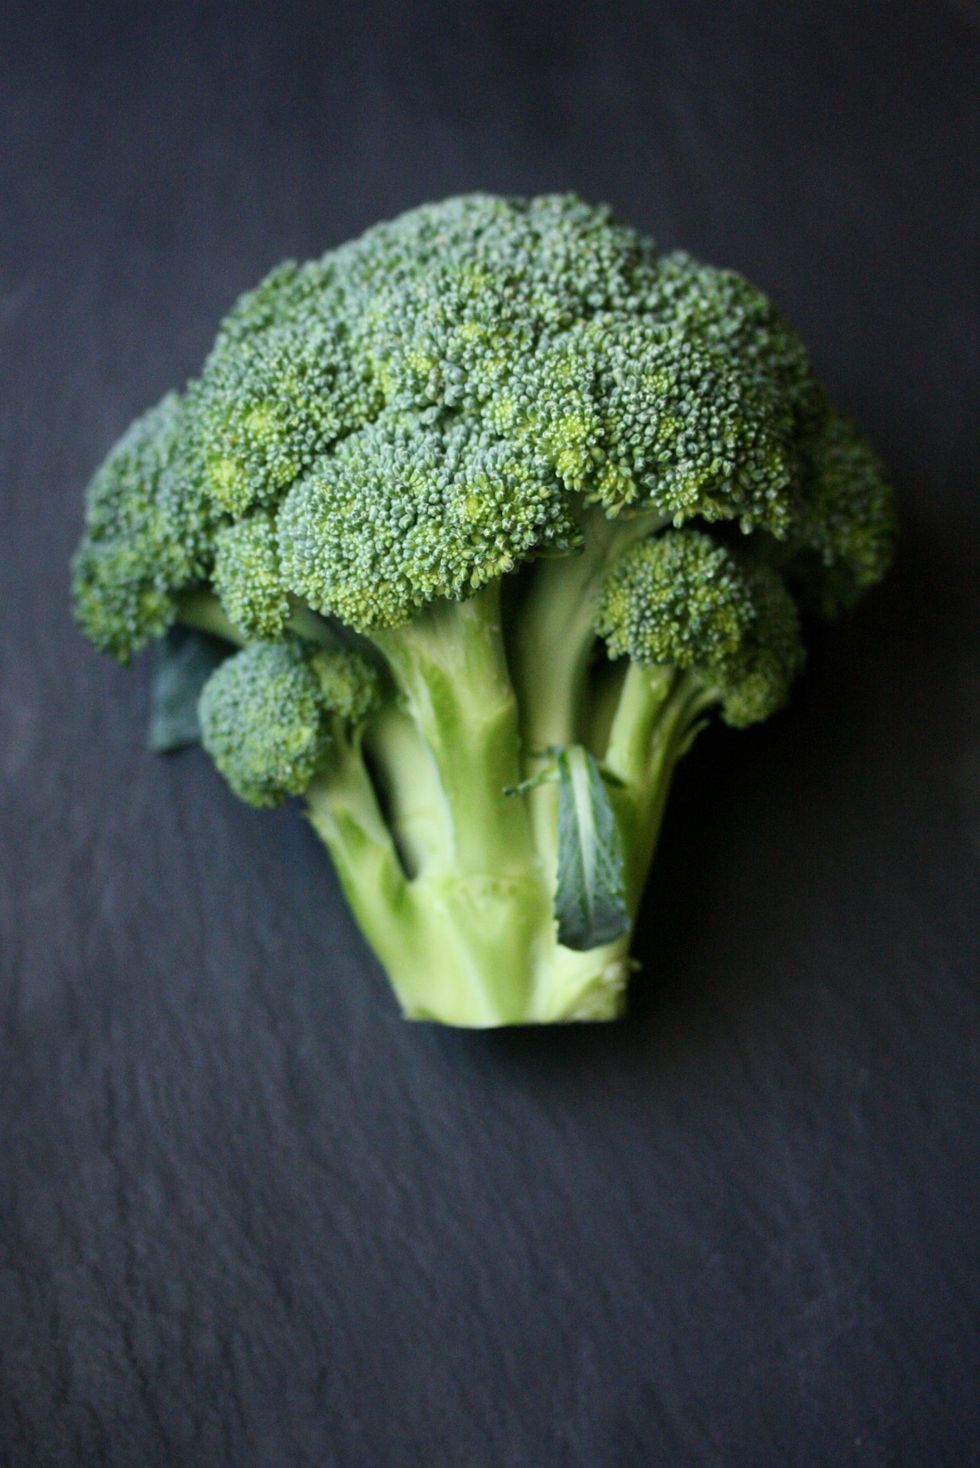 Fresh cut broccoli on table